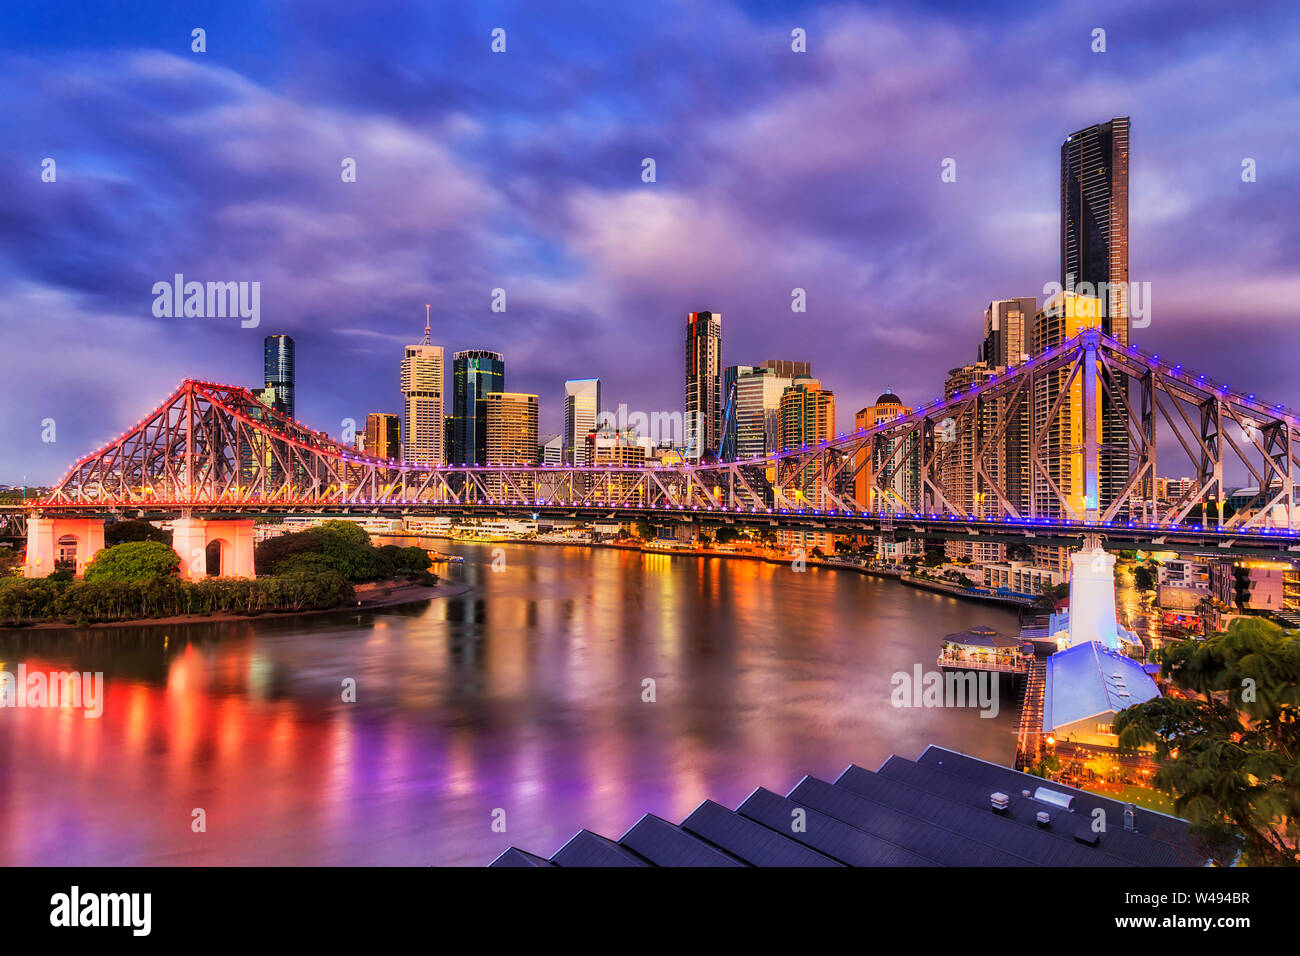 Bright Lights der Story Bridge in Brisbane in Brisbane River vor der hoch aufragenden Türmen, CBD. Vor Sonnenaufgang Bild mit Reflexion der Illuminati Stockfoto